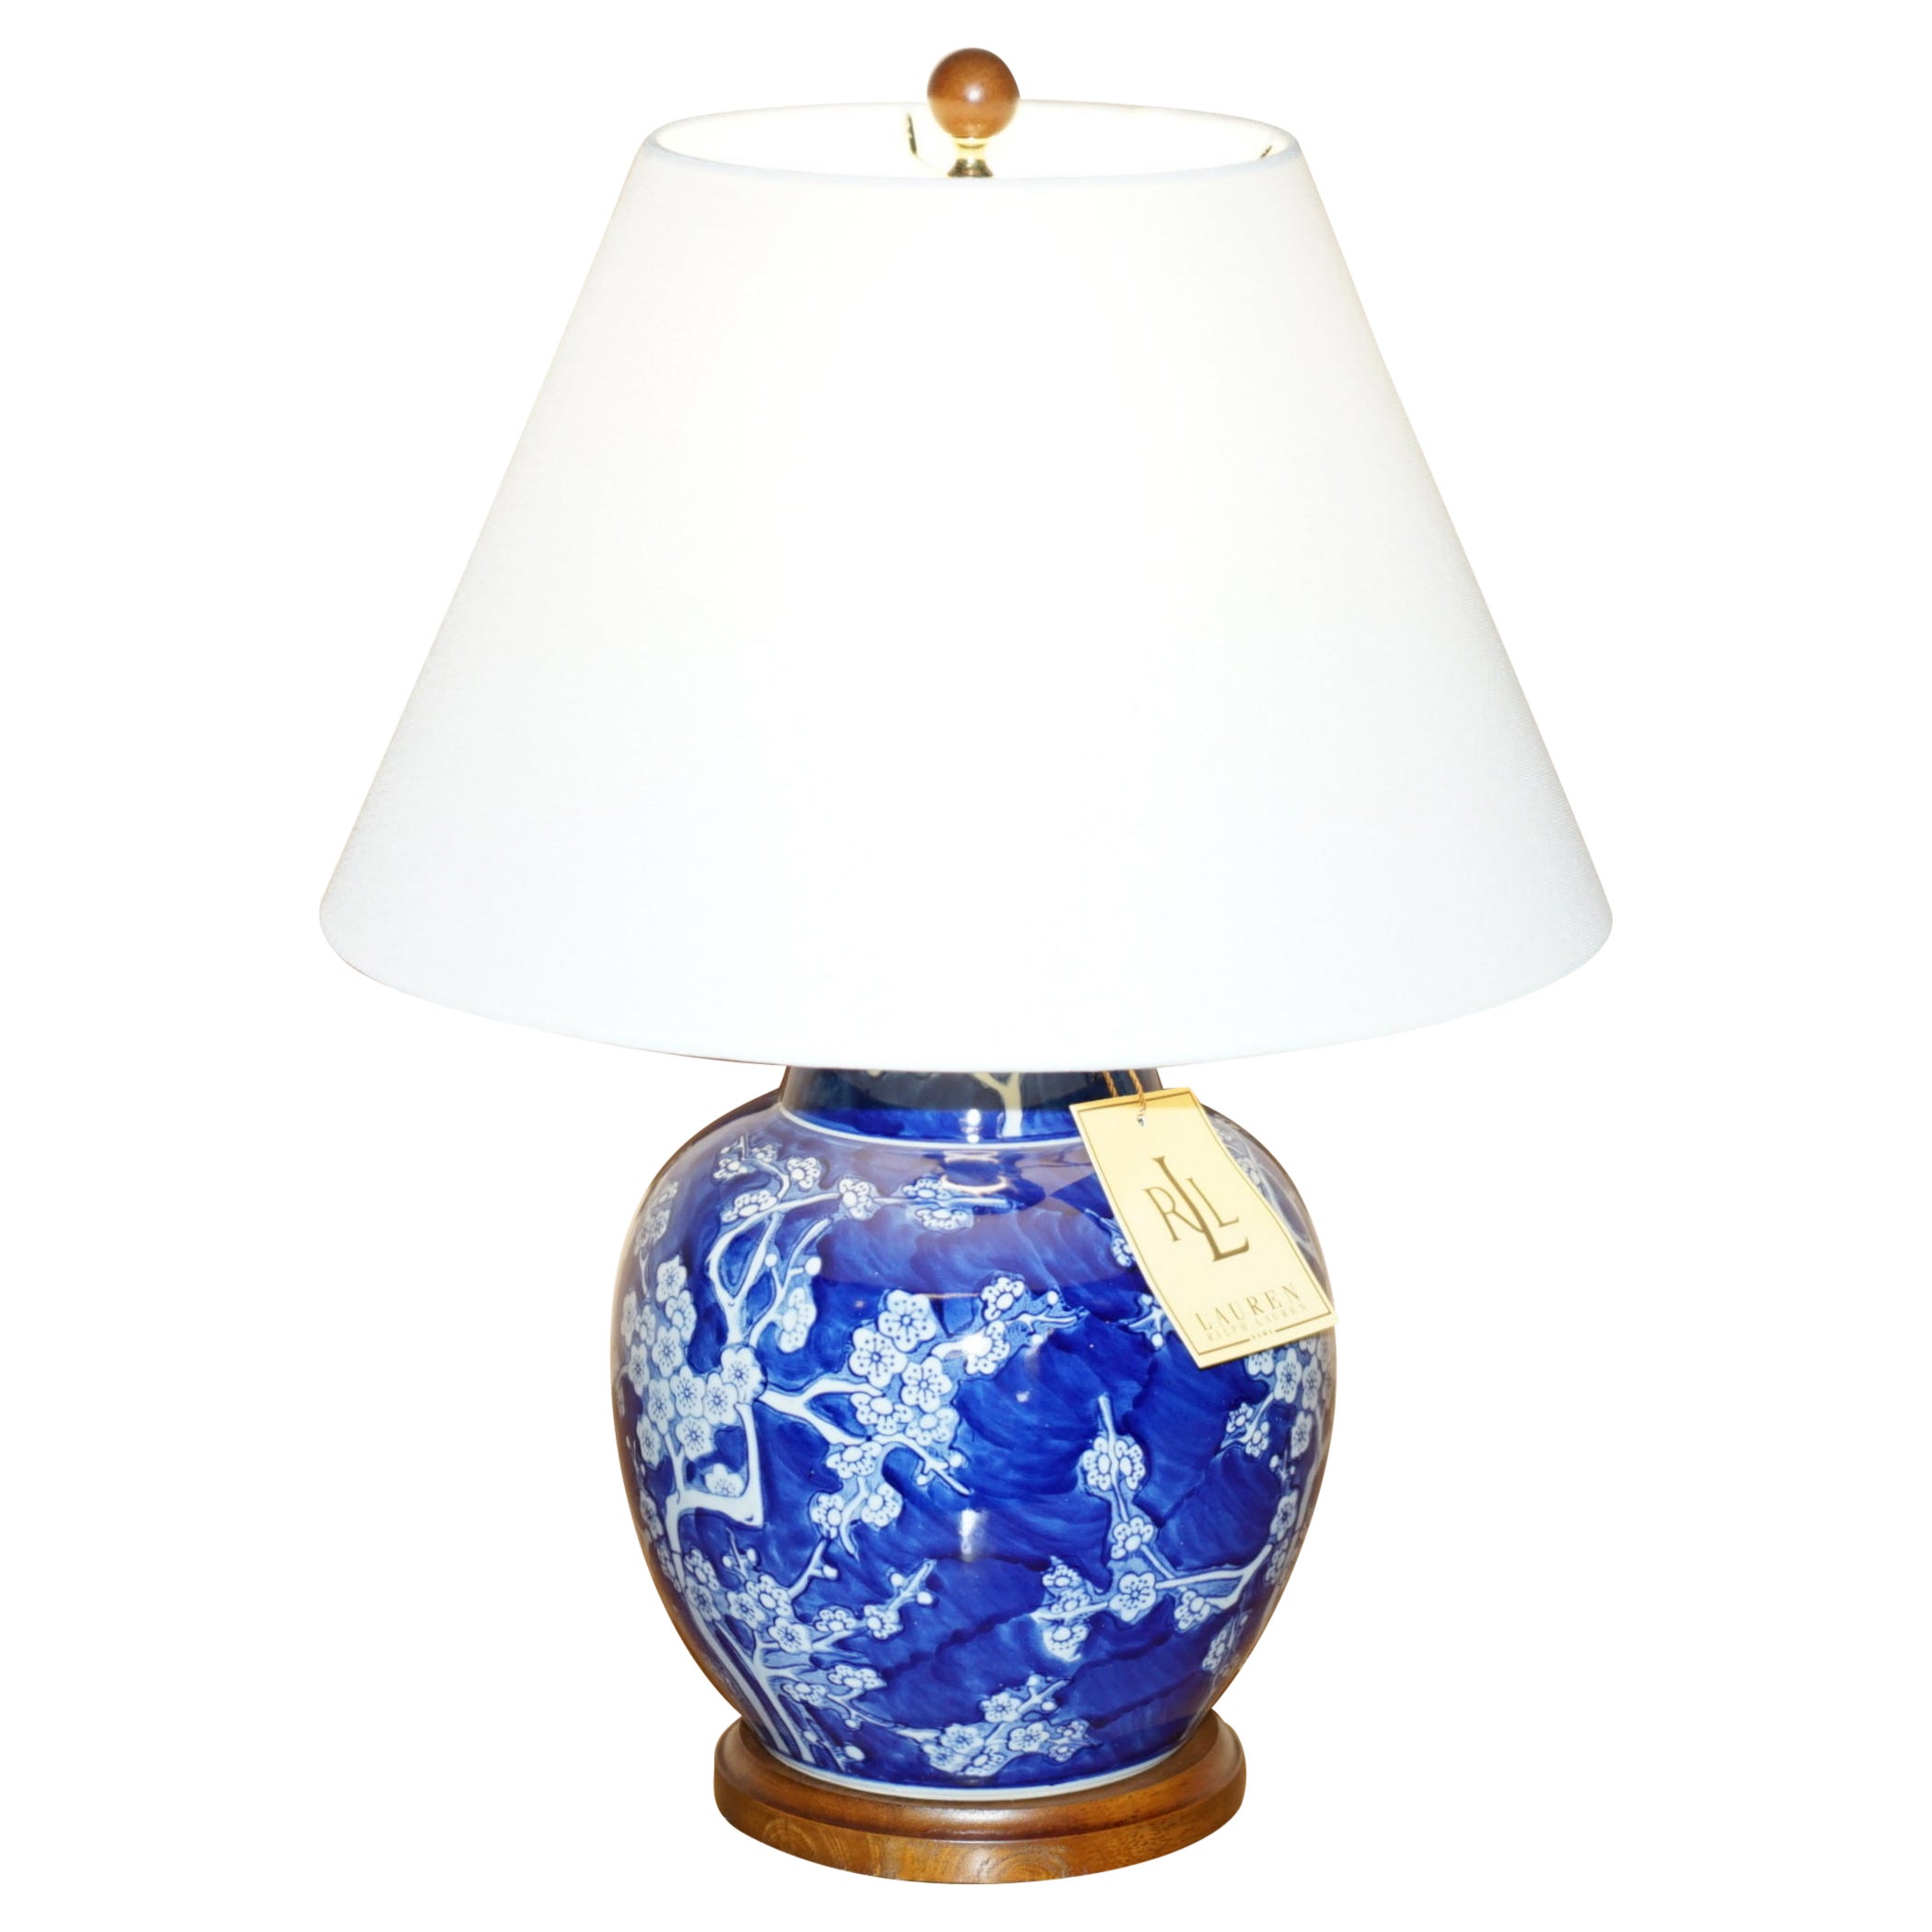 1 DE 6 LAMPLES RALPH LAUREN COBALT BLUE & WHITE CHINESE PORCELAIN NEW BOXED